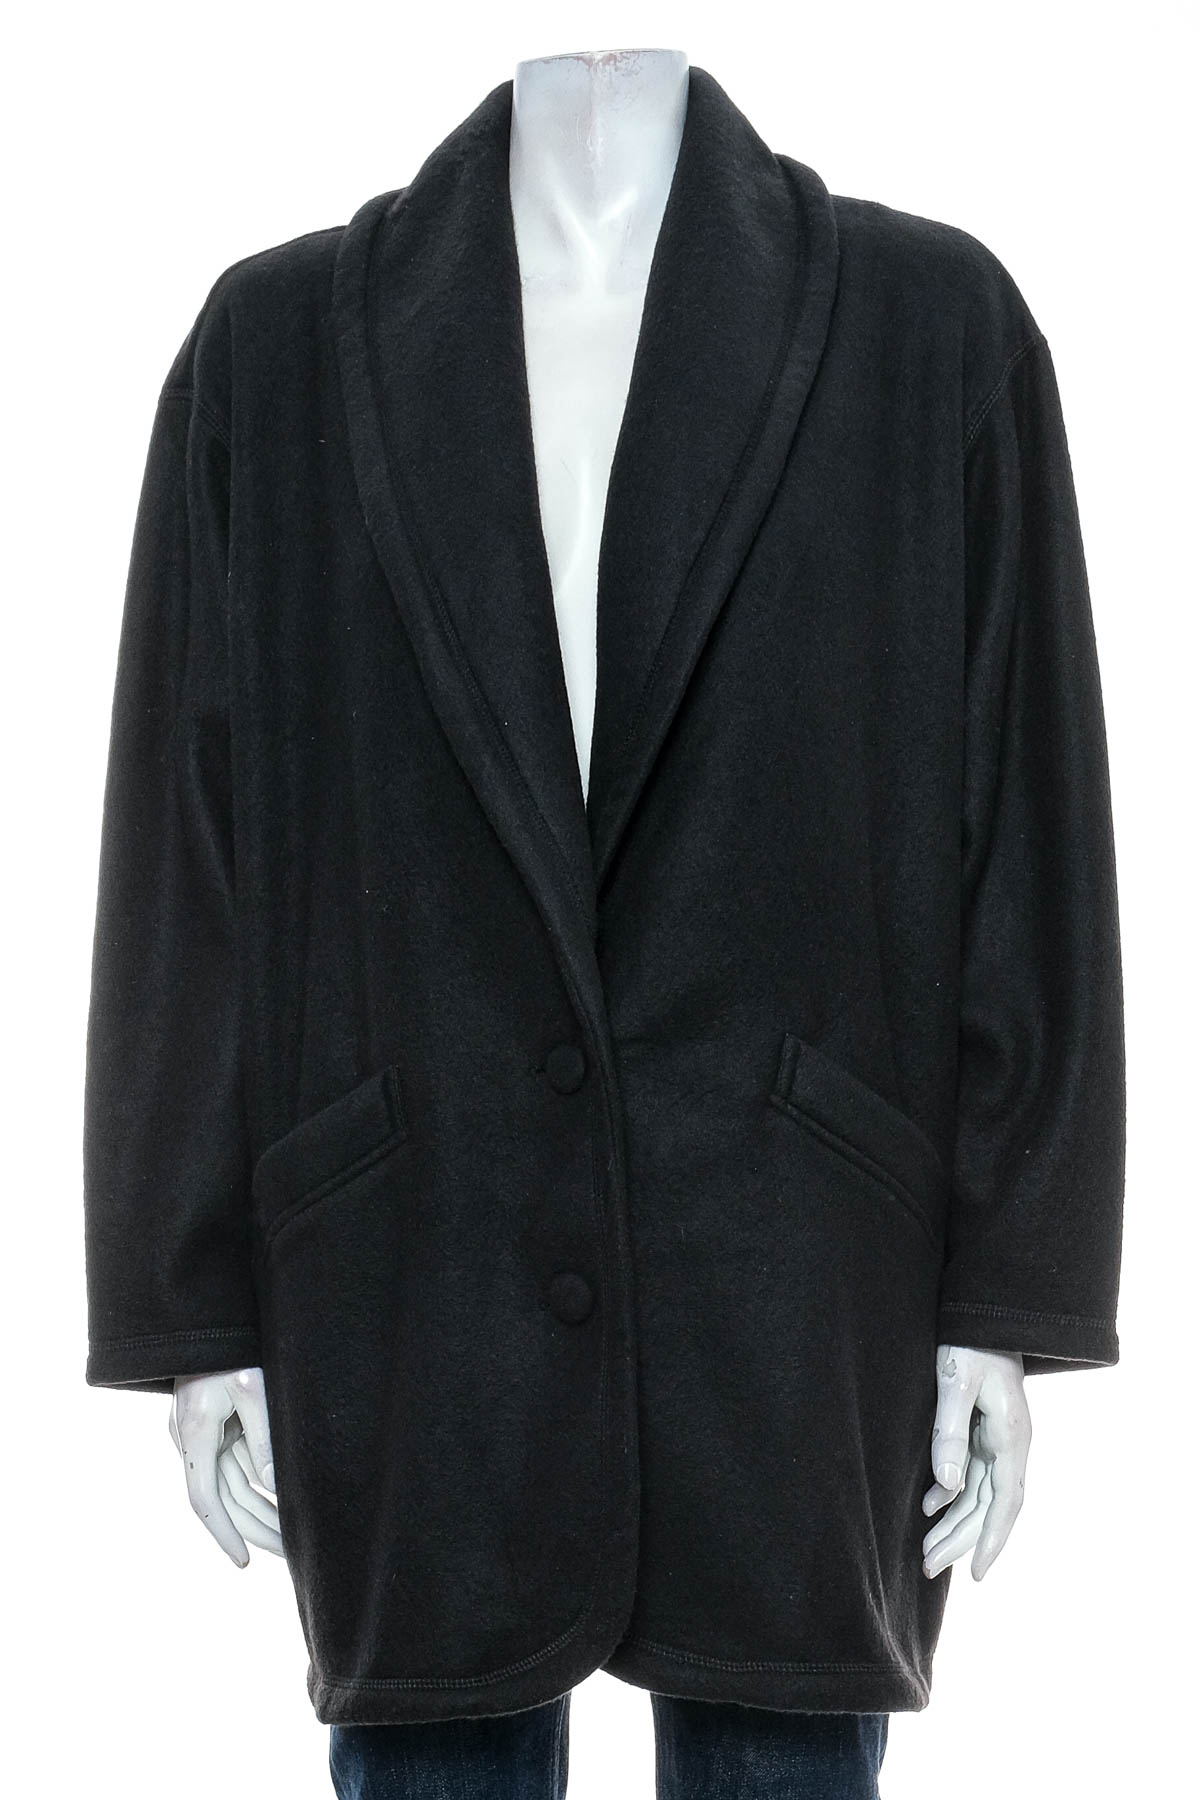 Women's coat - Image - 0